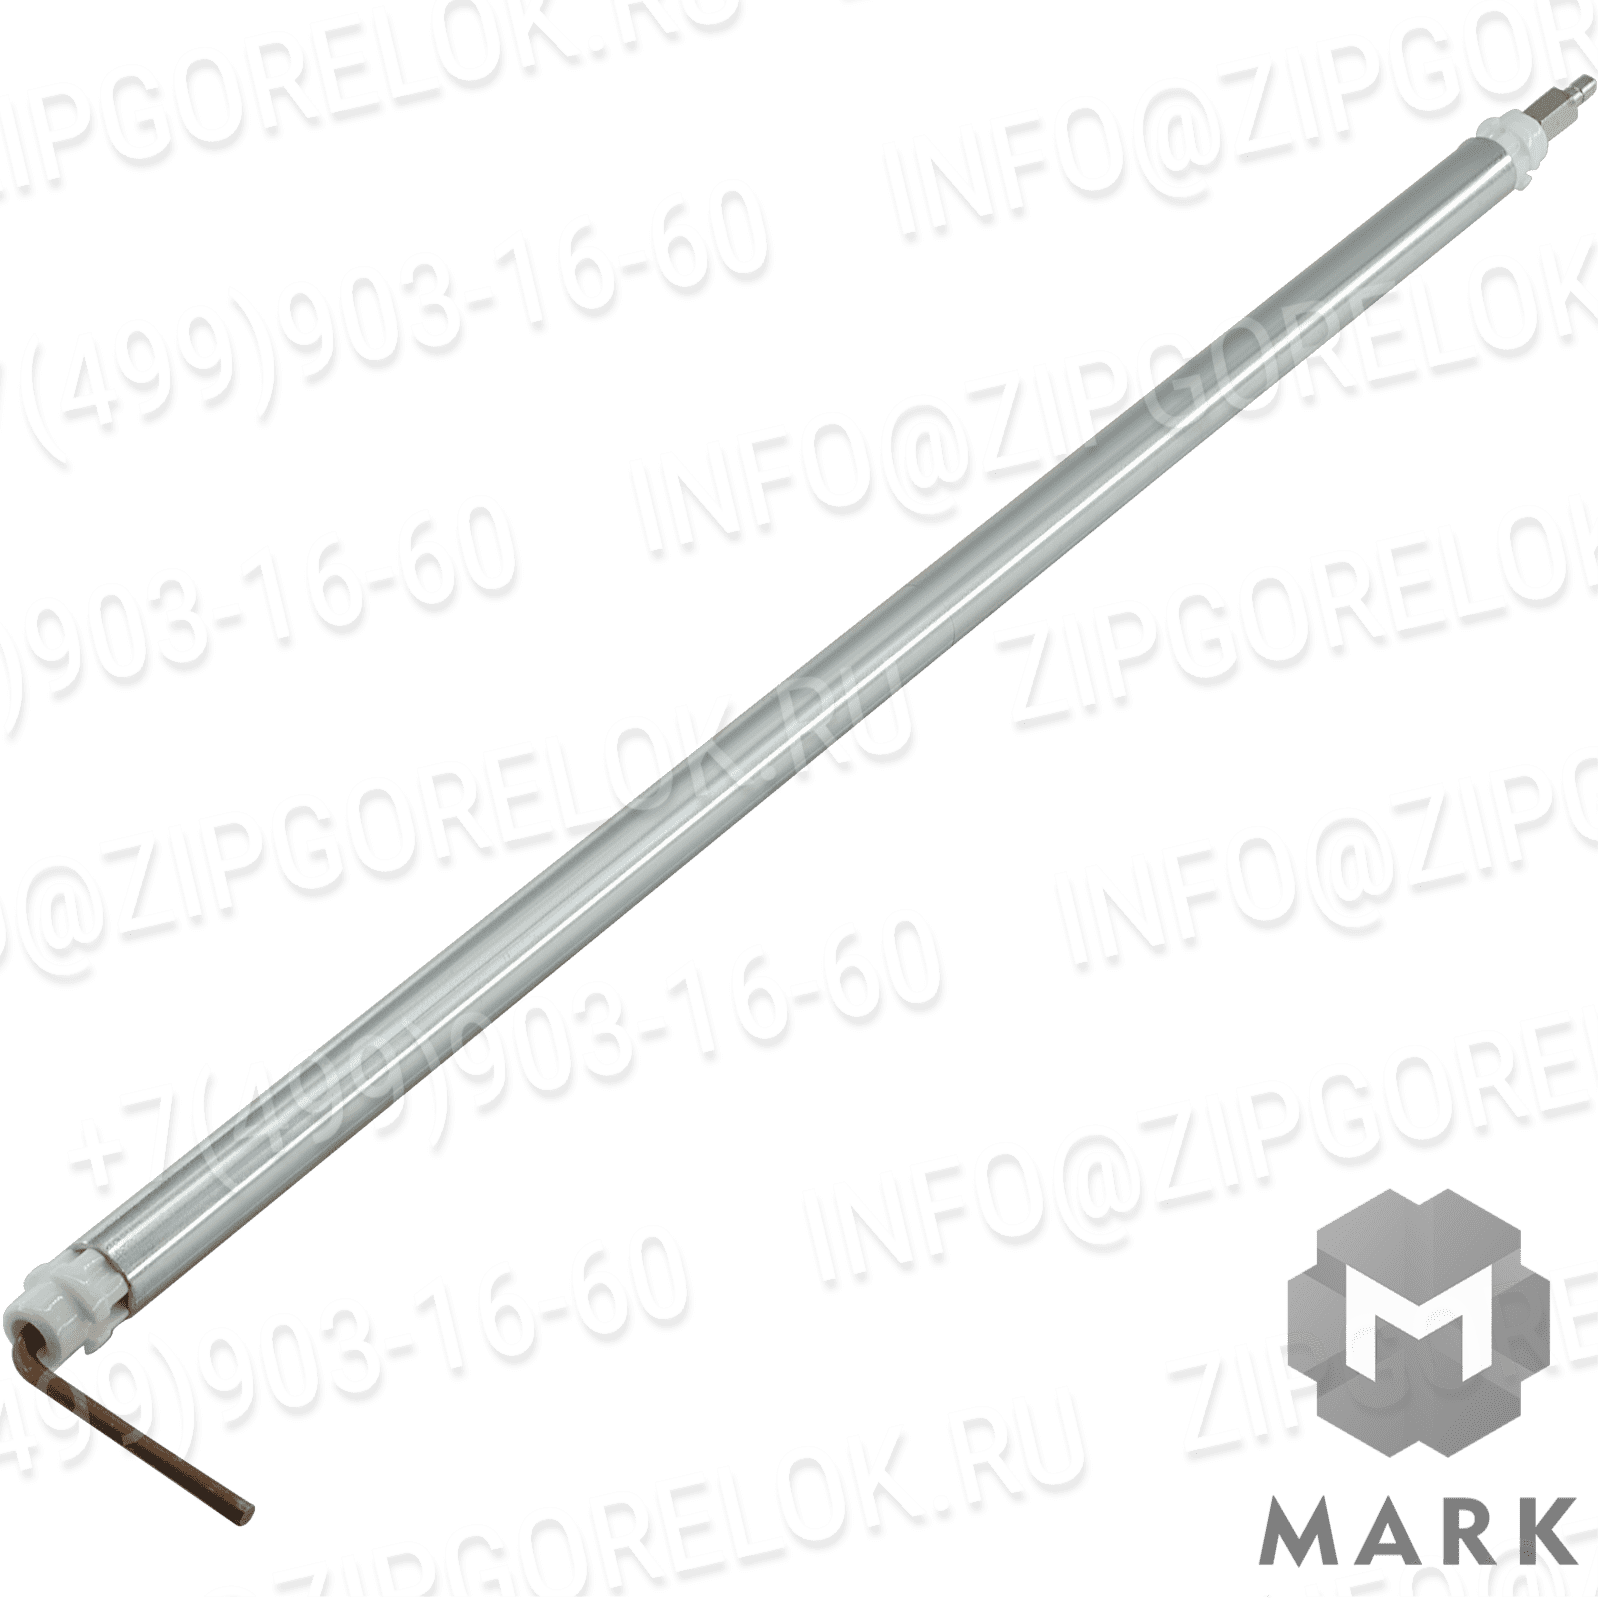 3012176 Купить Фланцевый фиксатор 59101 | Zipgorelok.ru